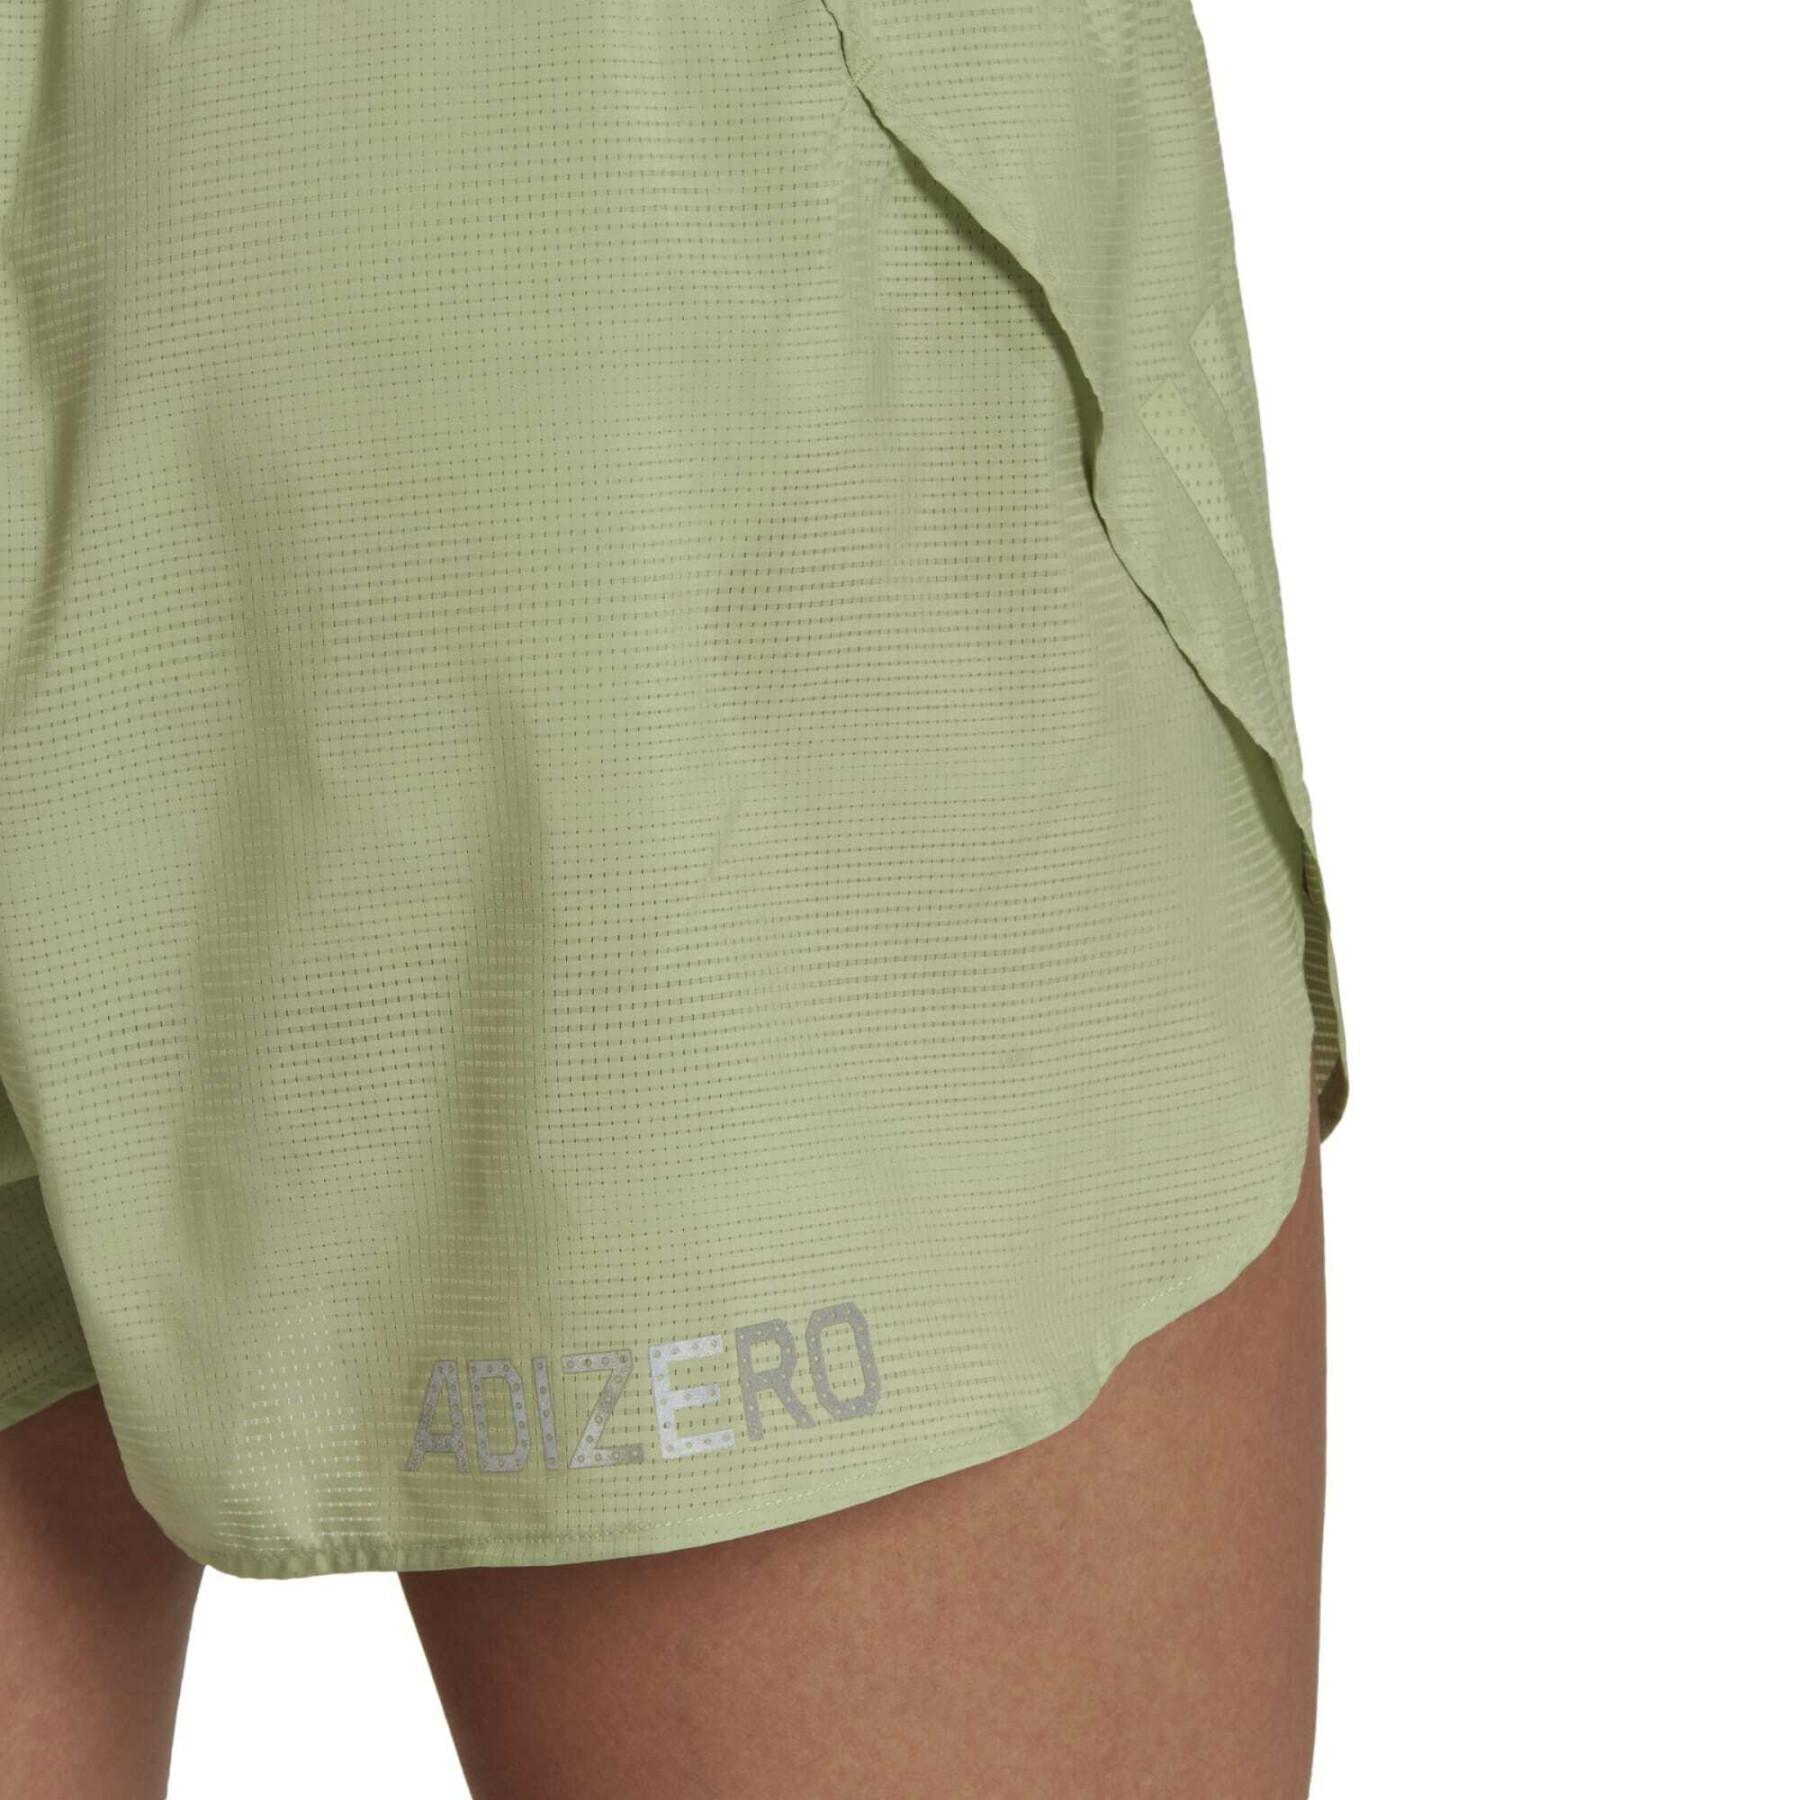 Women's running shorts adidas Adizero